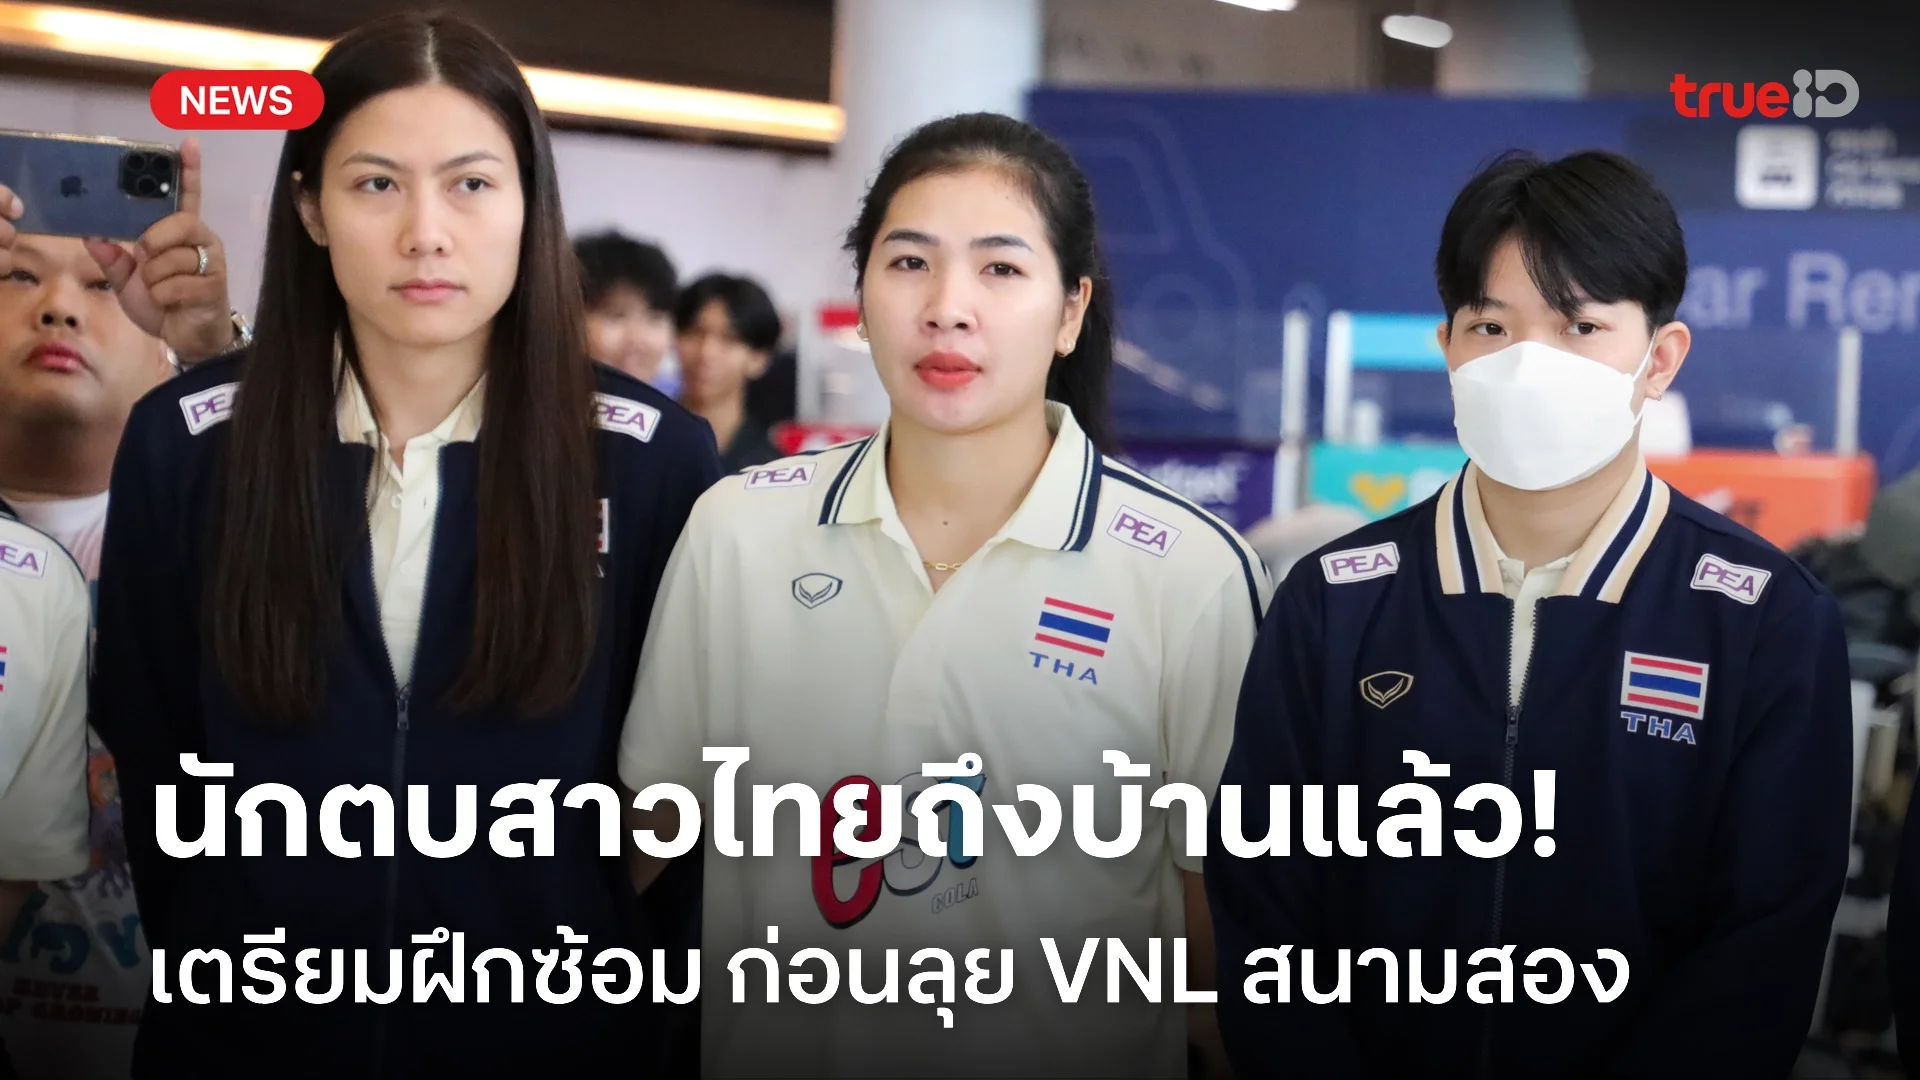 ฝึกซ้อมต่อ! นักตบสาวไทย เดินทางกลับถึงไทย หลังจบศึกเนชั่นส์ลีก วีกแรก